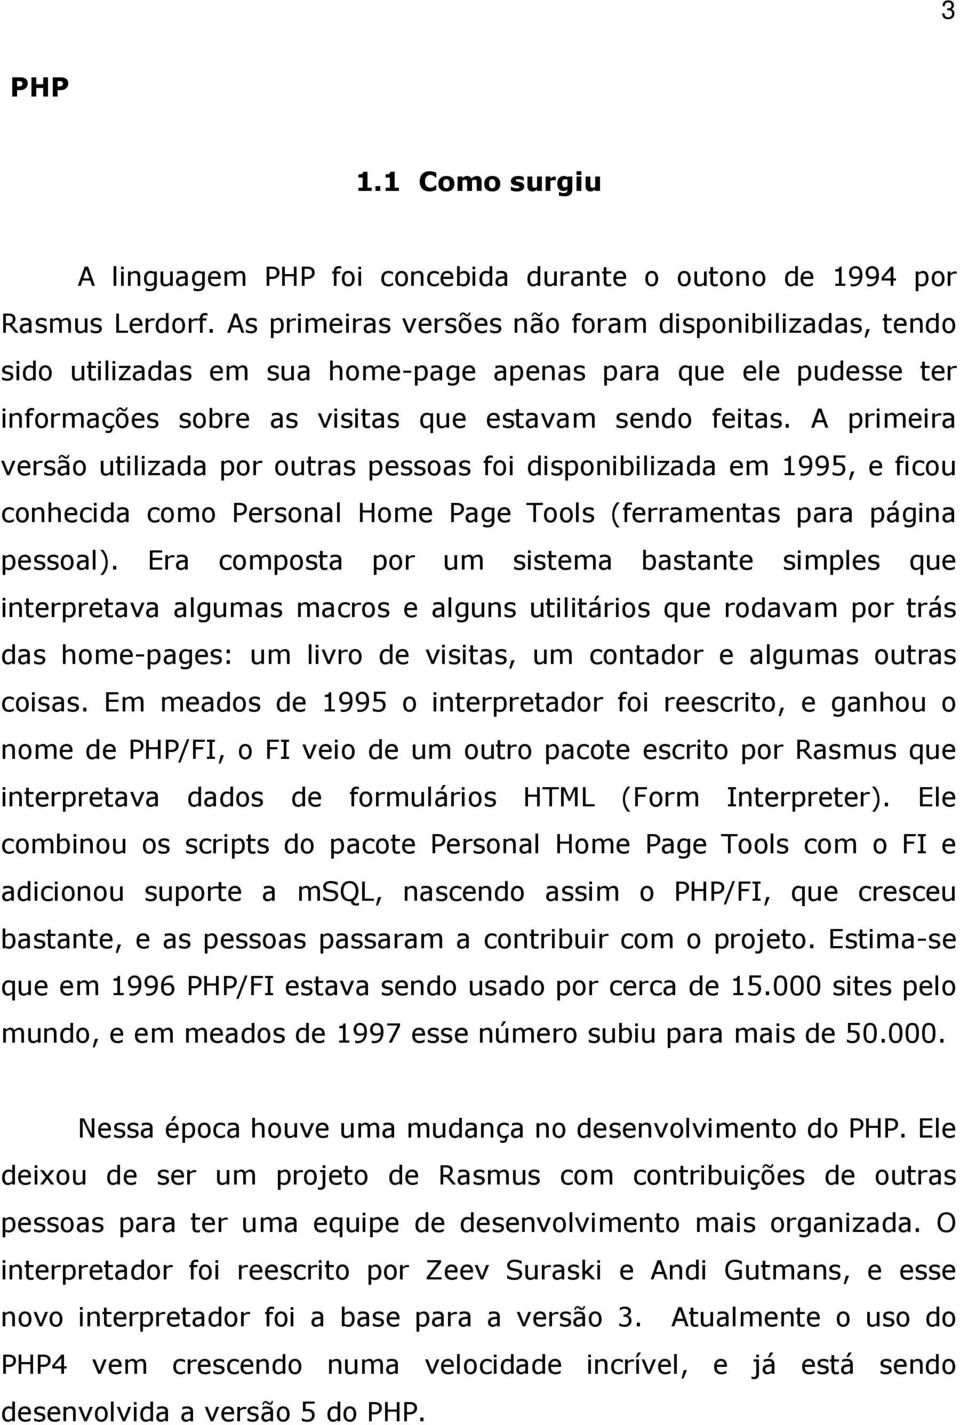 A primeira versão utilizada por outras pessoas foi disponibilizada em 1995, e ficou conhecida como Personal Home Page Tools (ferramentas para página pessoal).